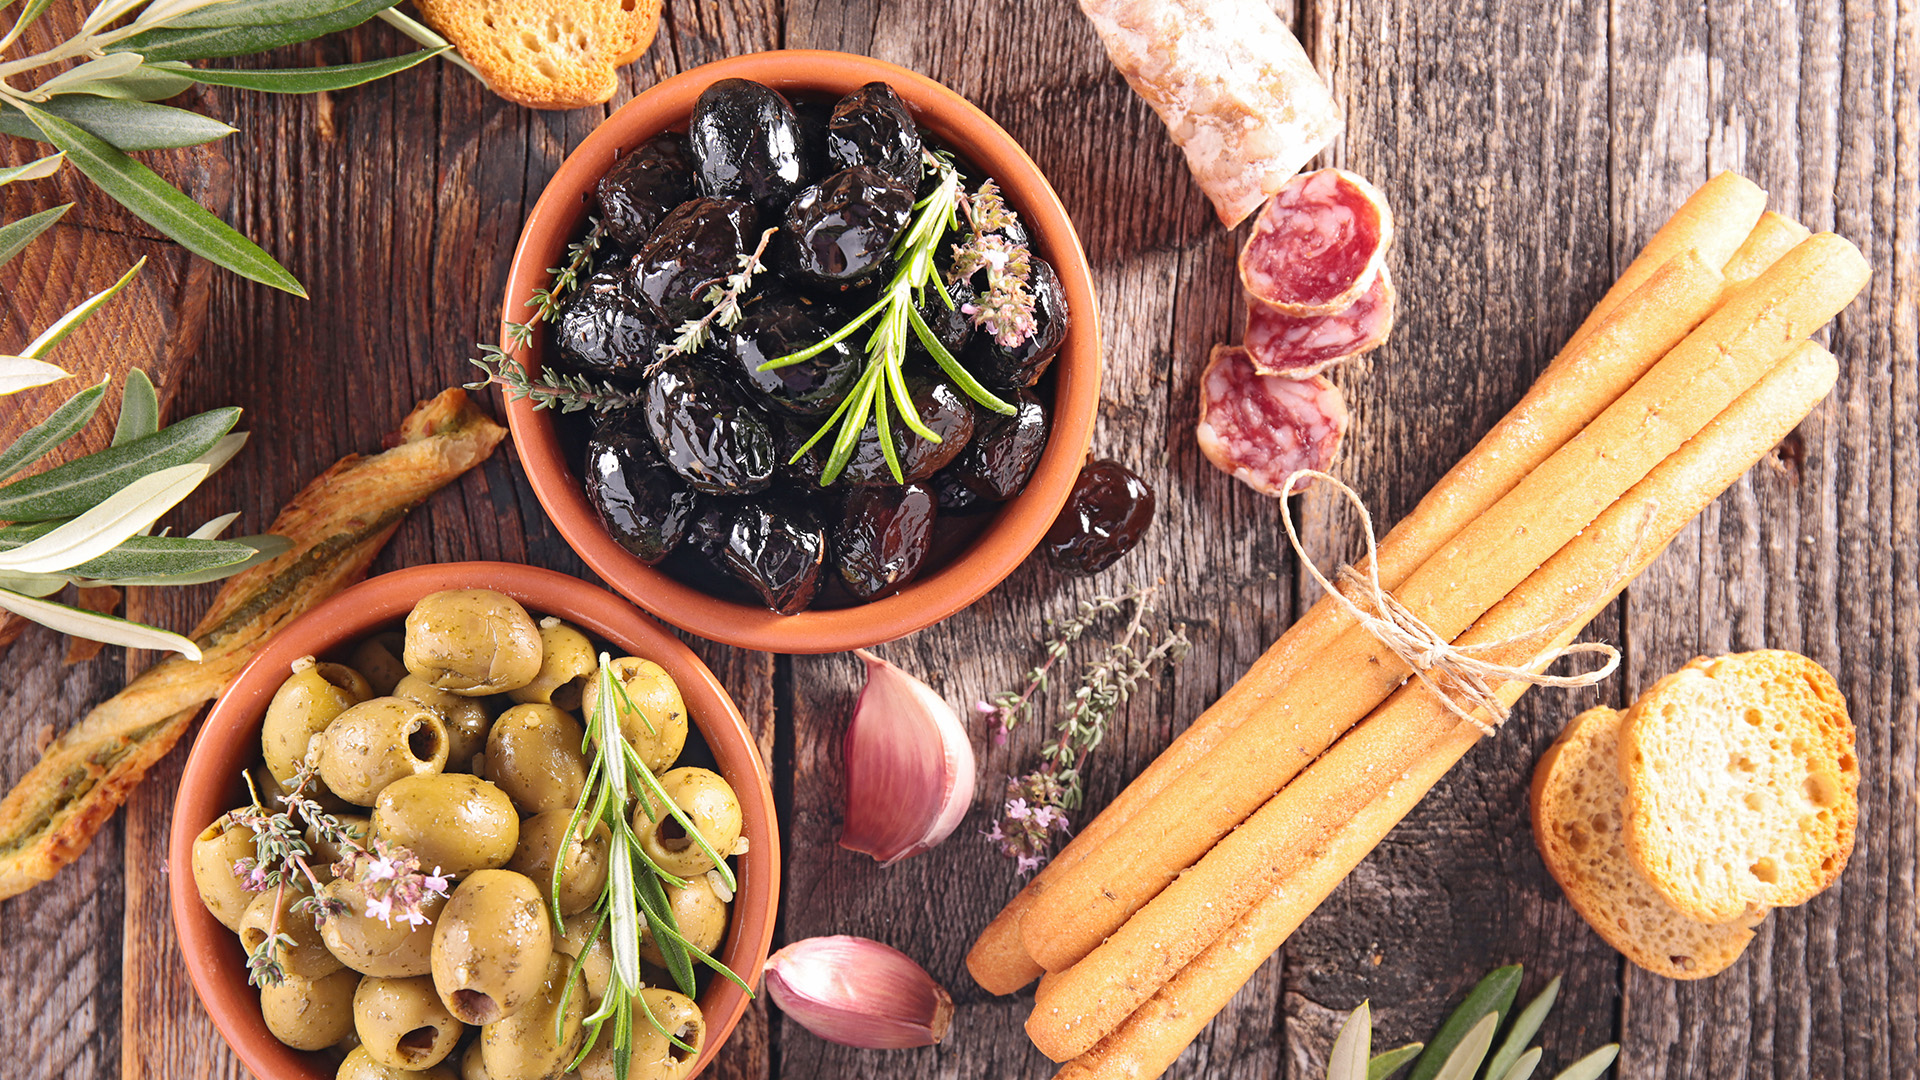 antipasto con olive schiacciate alla calabrese, olive verdi, salumi affettati e pane